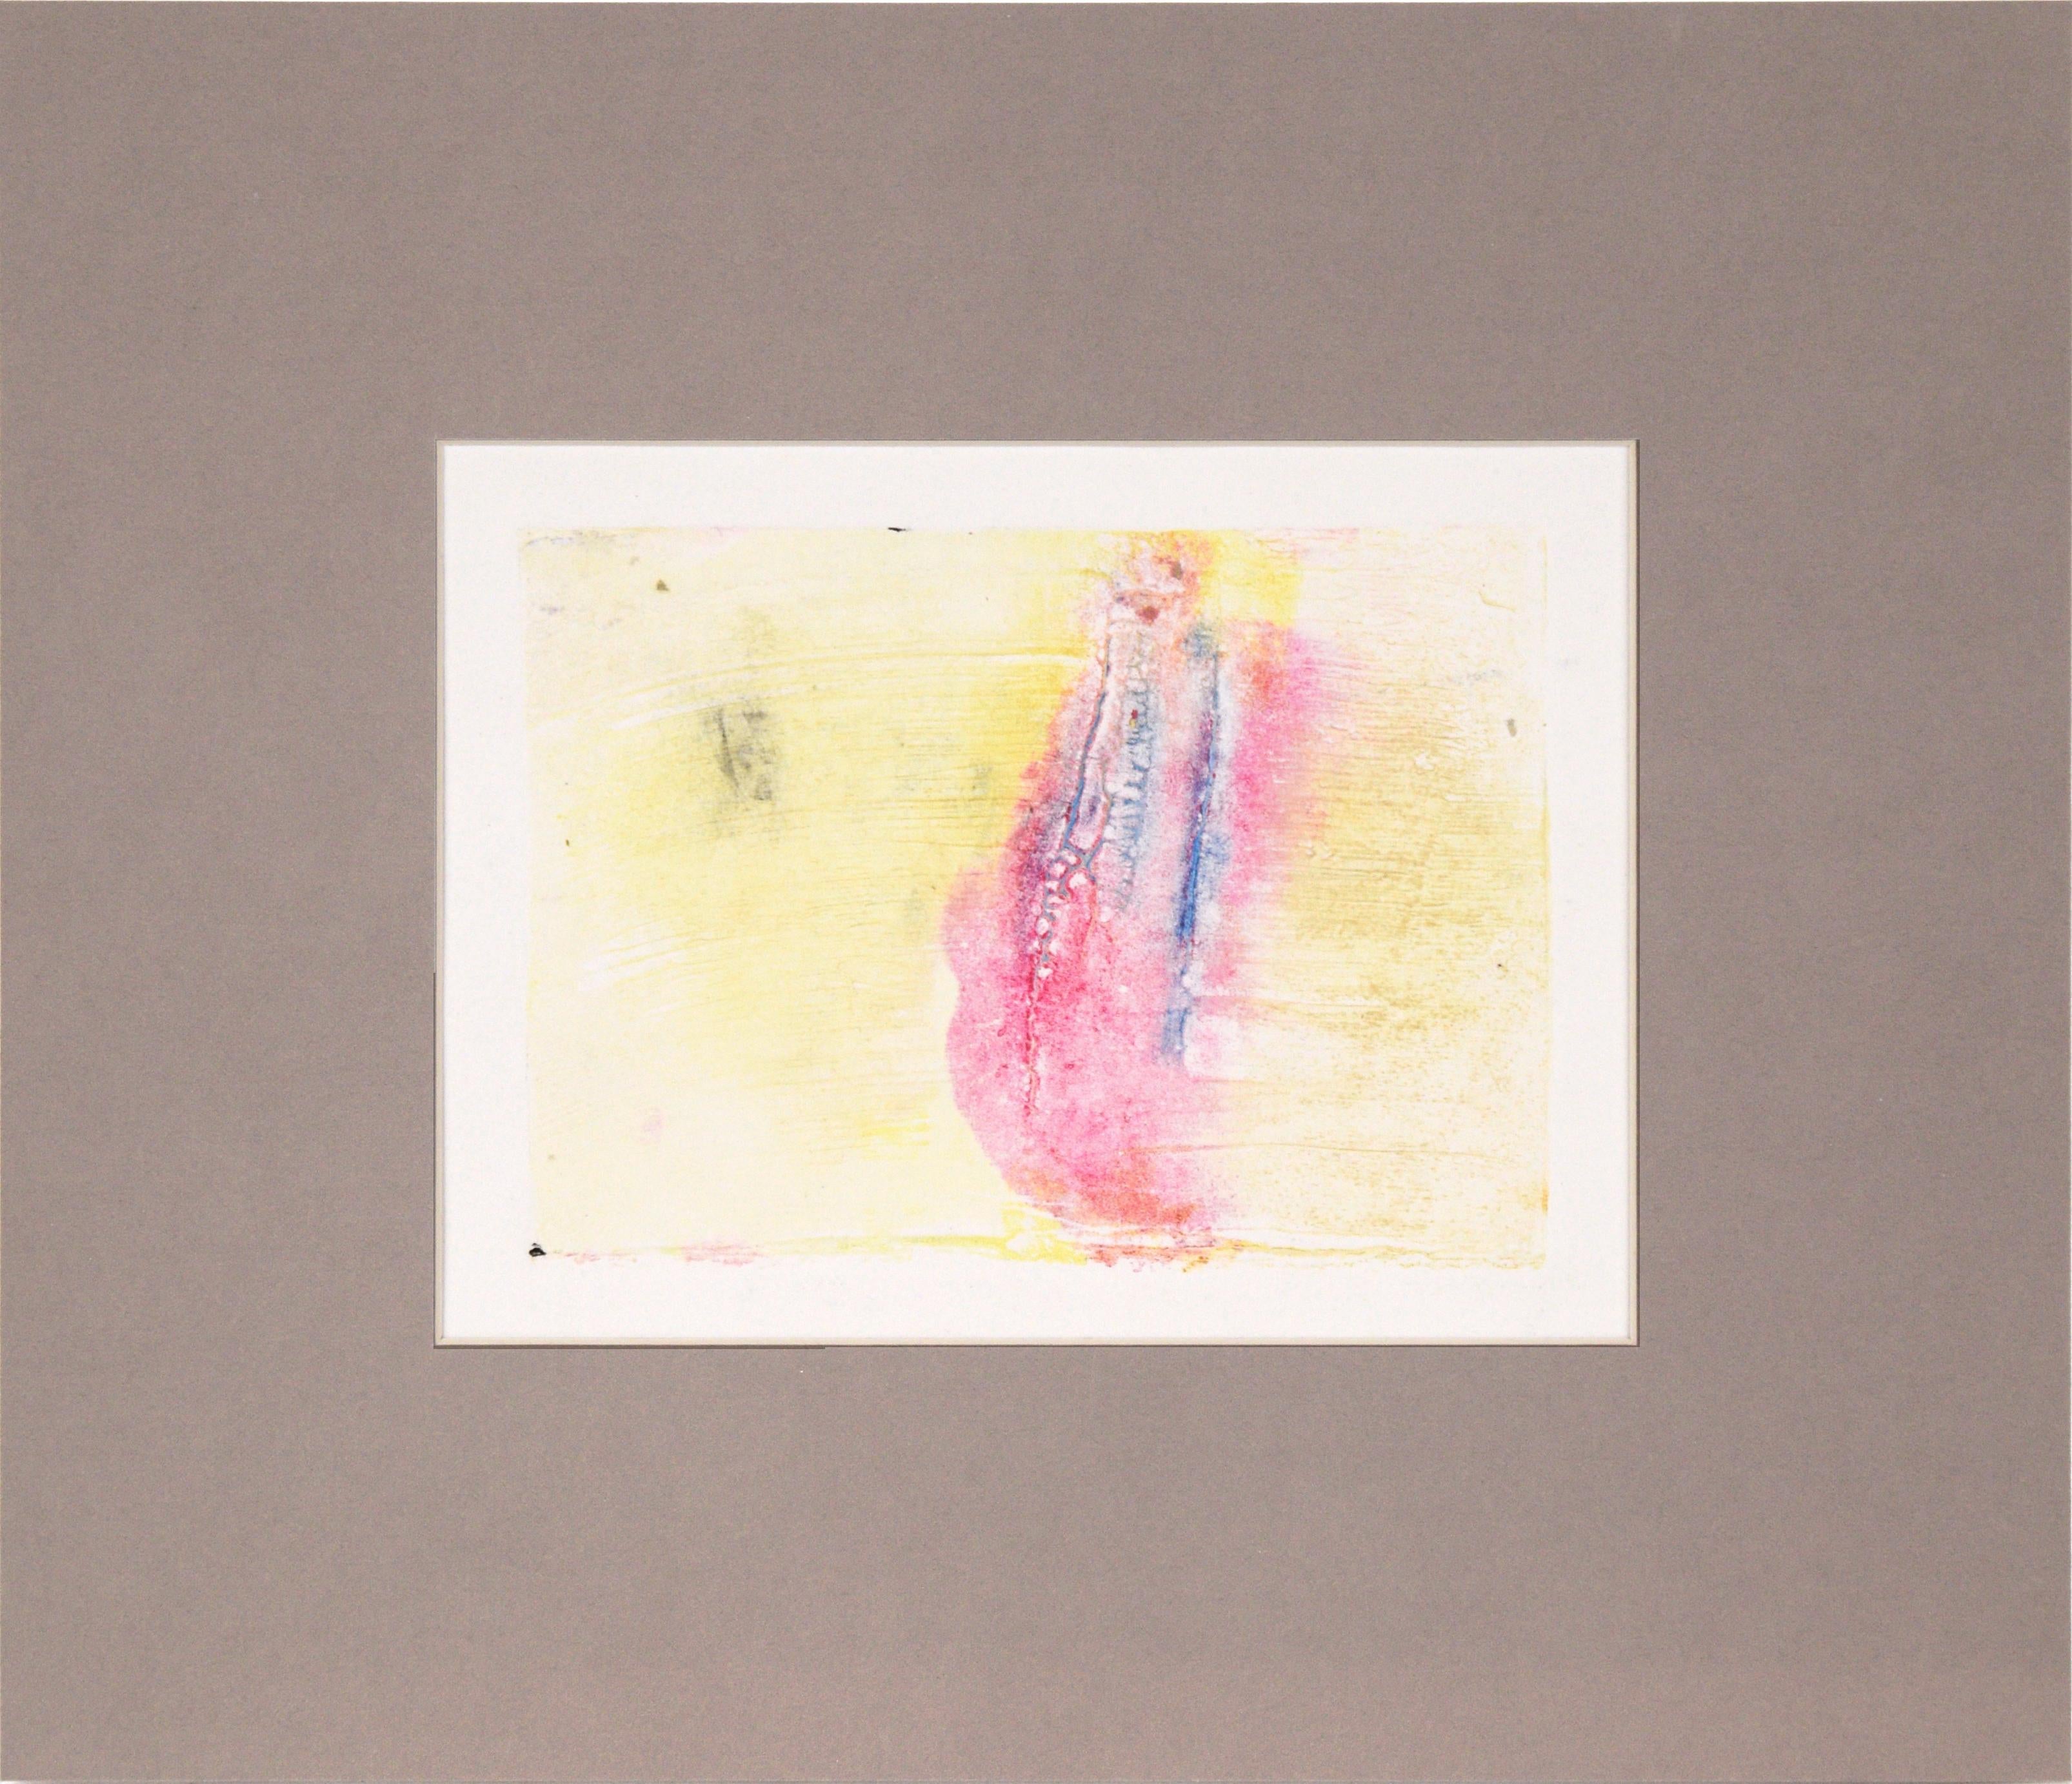 Monotype de transfert bleu et rose sur jaune texturé à l'huile sur papier